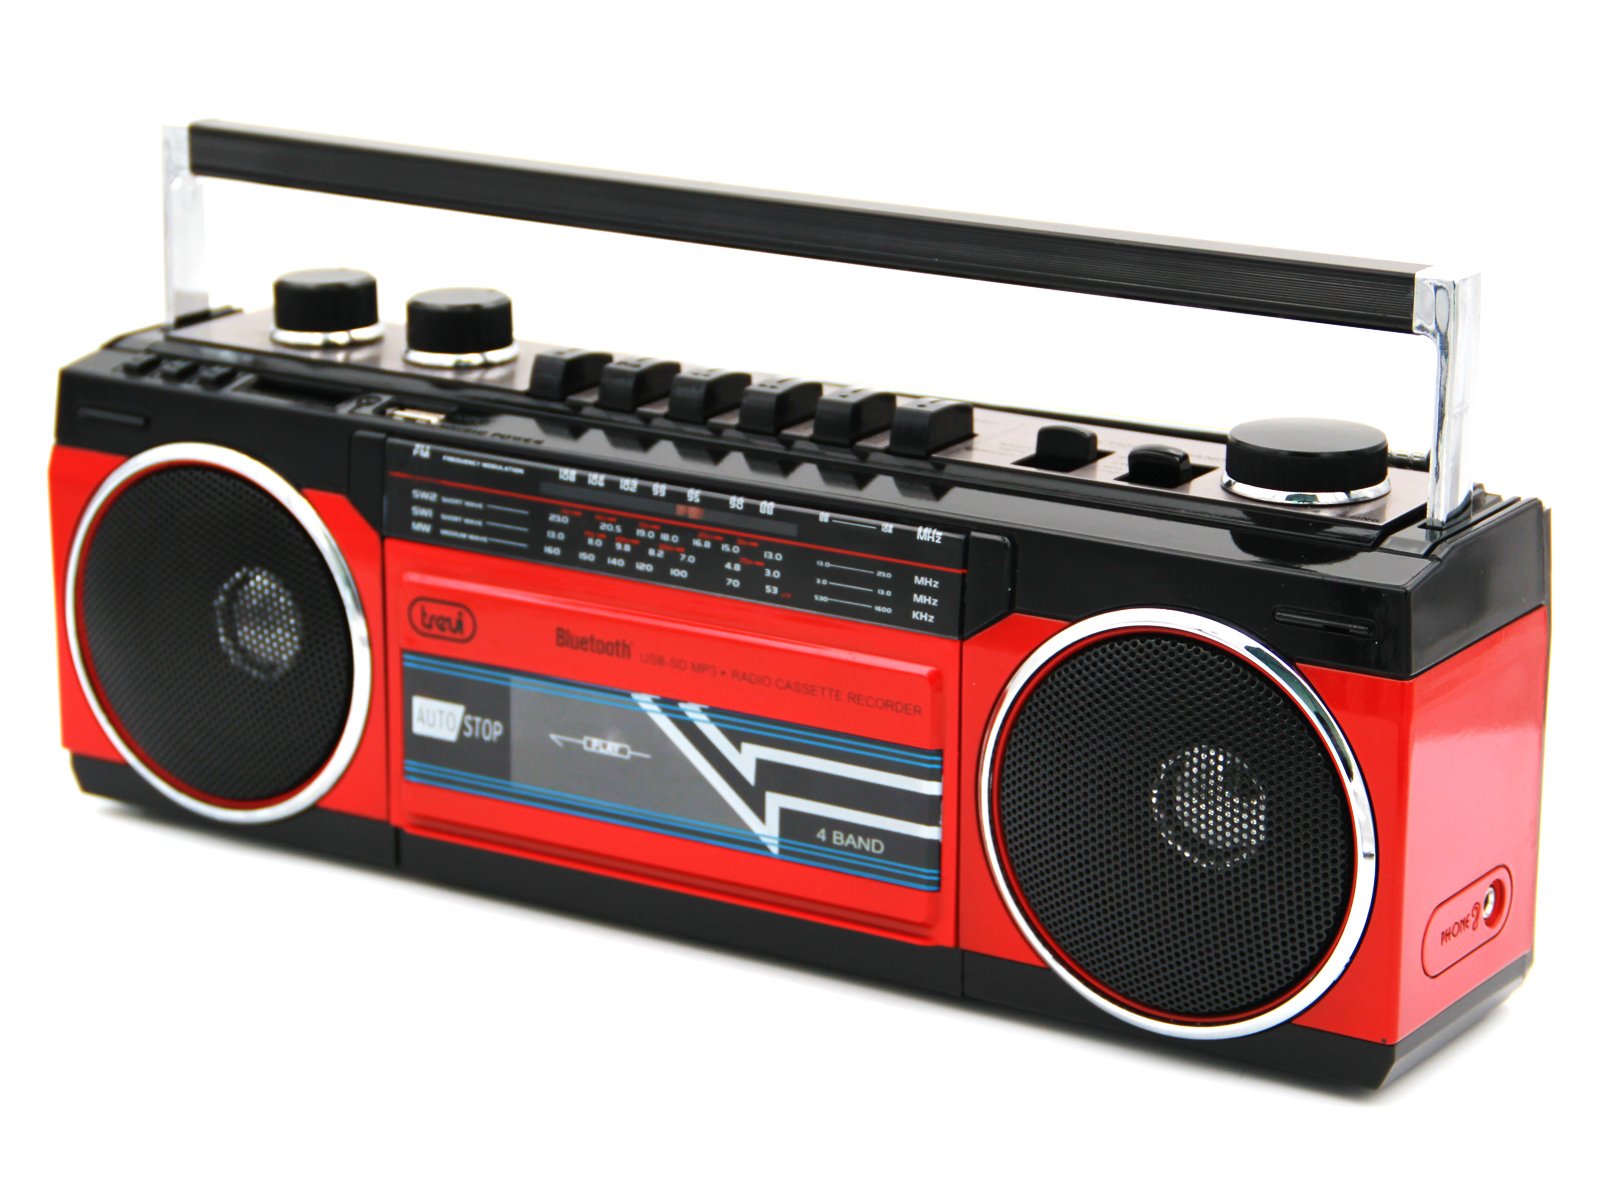 Ретро магнитофон. Ретро-магнитофон Roadstar RCR-3025bl. Ретро-магнитофон Roadstar RCR-3025bk, черный. Магнитофон в ретро стиле Roadstar RCR-3025ebt. Boombox магнитофон.